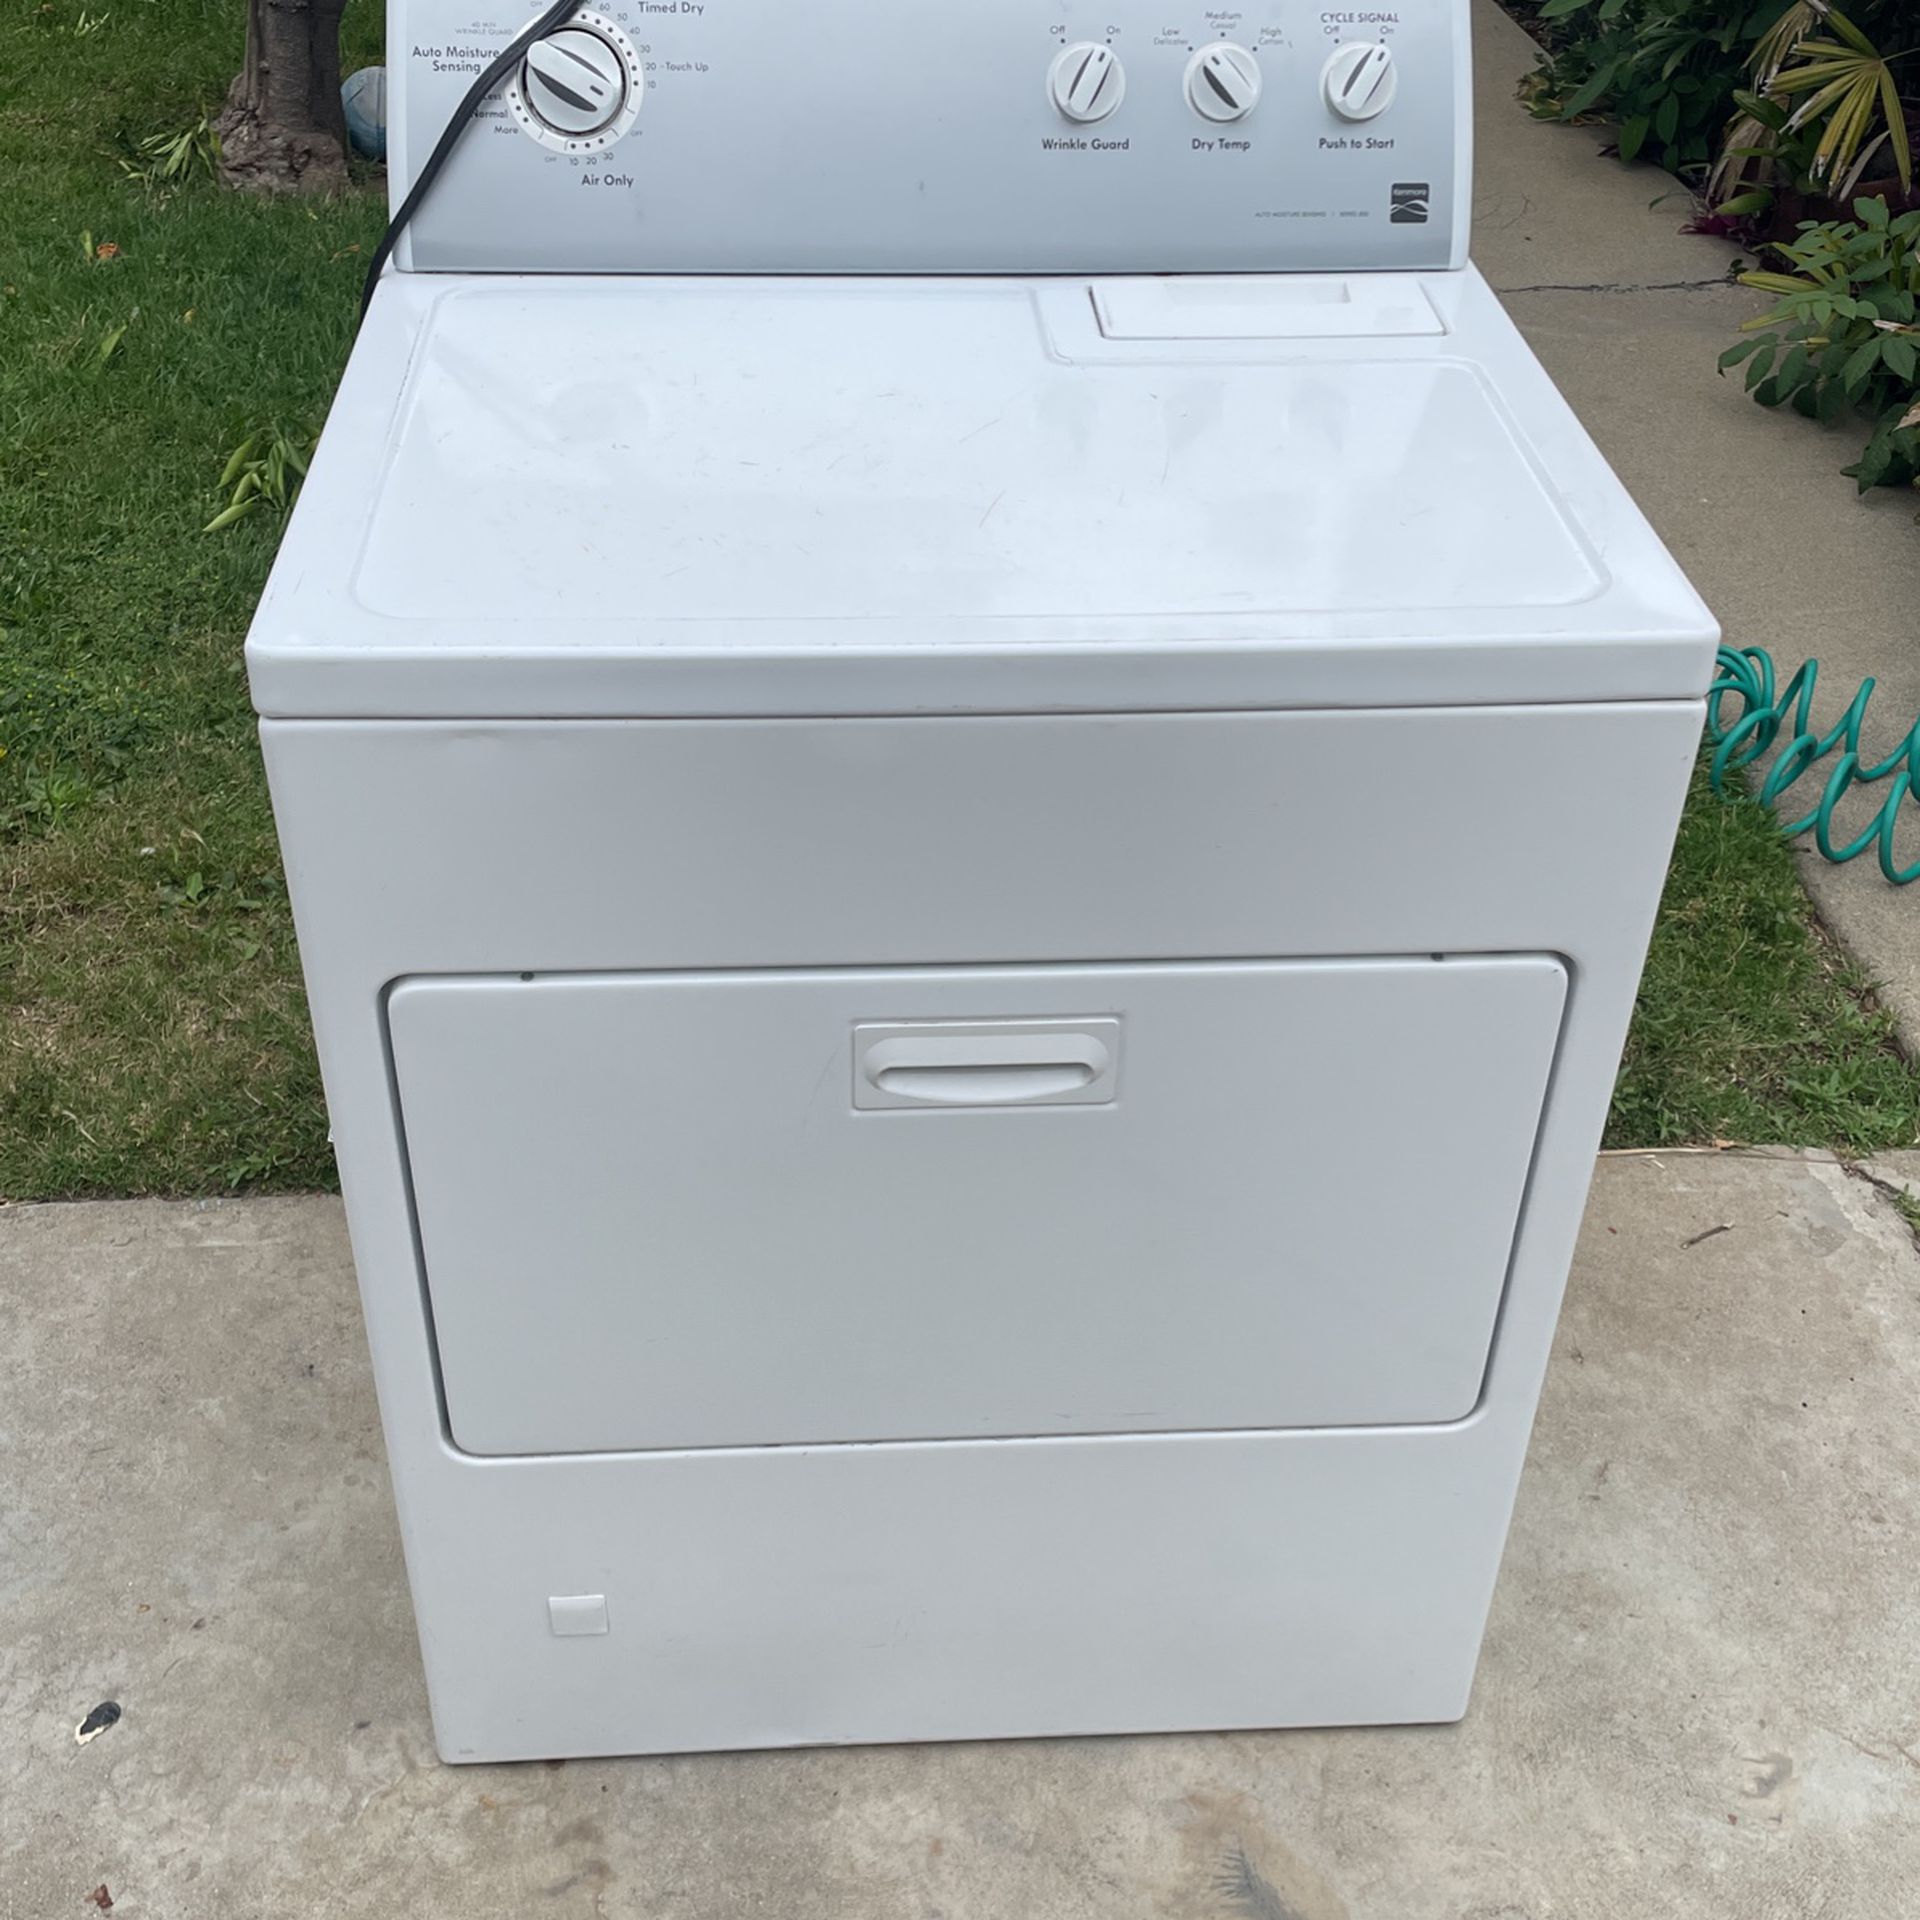  Kenmore Series 500 Dryer